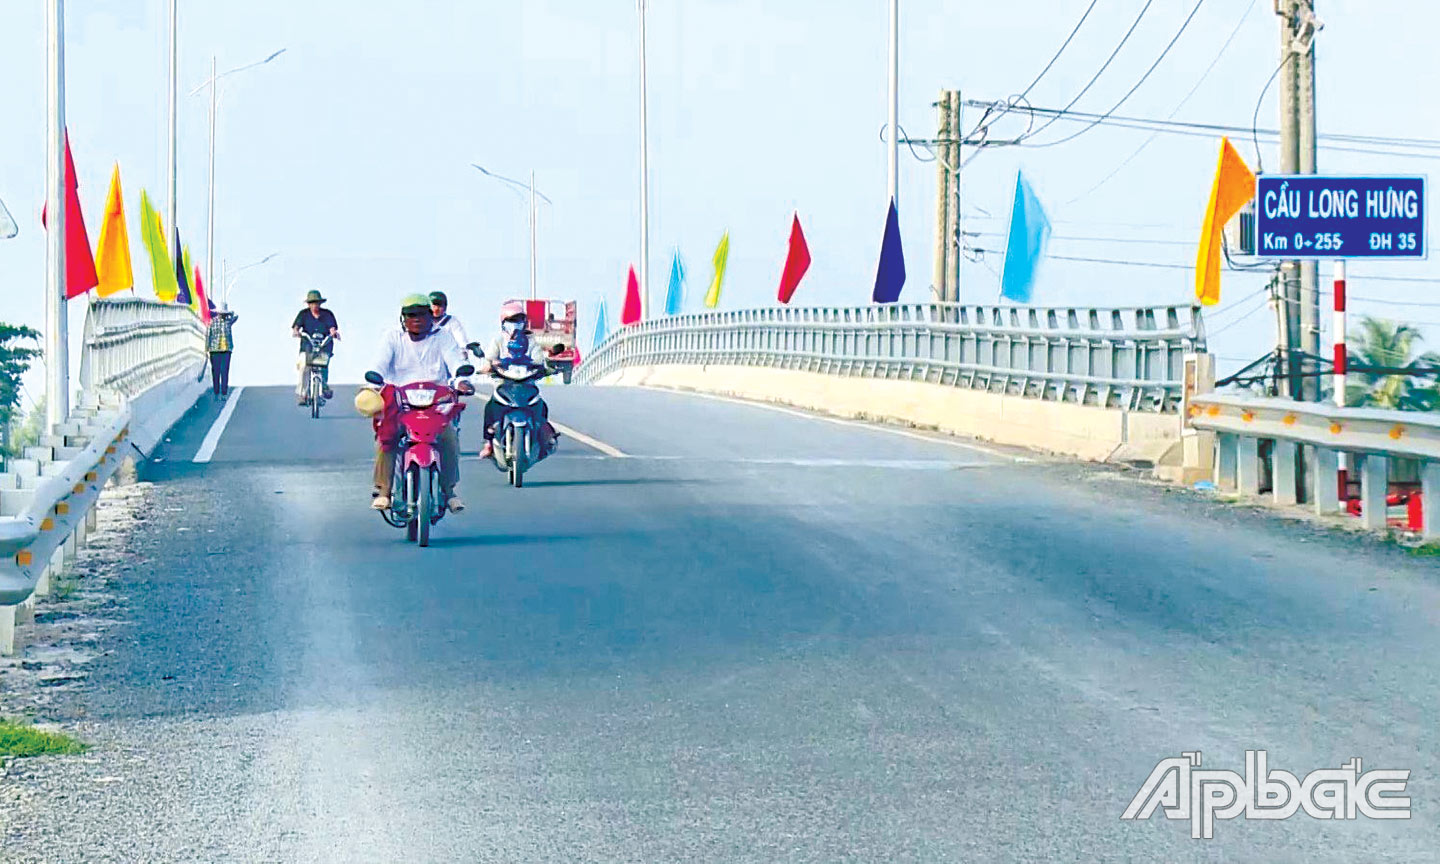 Cầu Long Hưng bắc qua kinh Nguyễn Tấn Thành mở ra nhiều cơ hội phát triển mới cho xã Long Hưng.